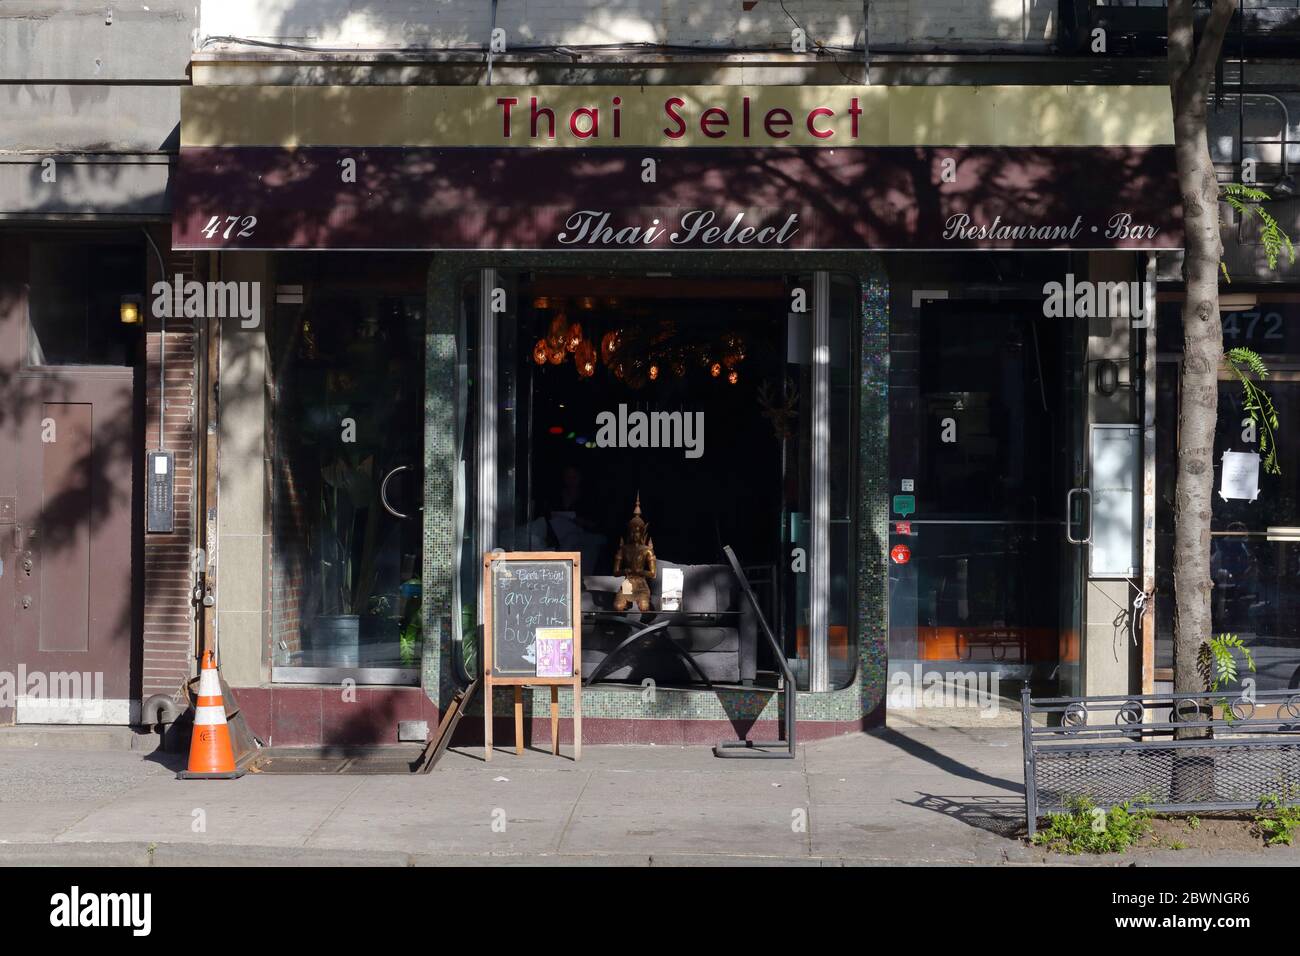 Thai Select NY, 472 Ninth Ave, New York. Foto del negozio di New York di un ristorante tailandese nel quartiere Hell's Kitchen di Manhattan. Foto Stock